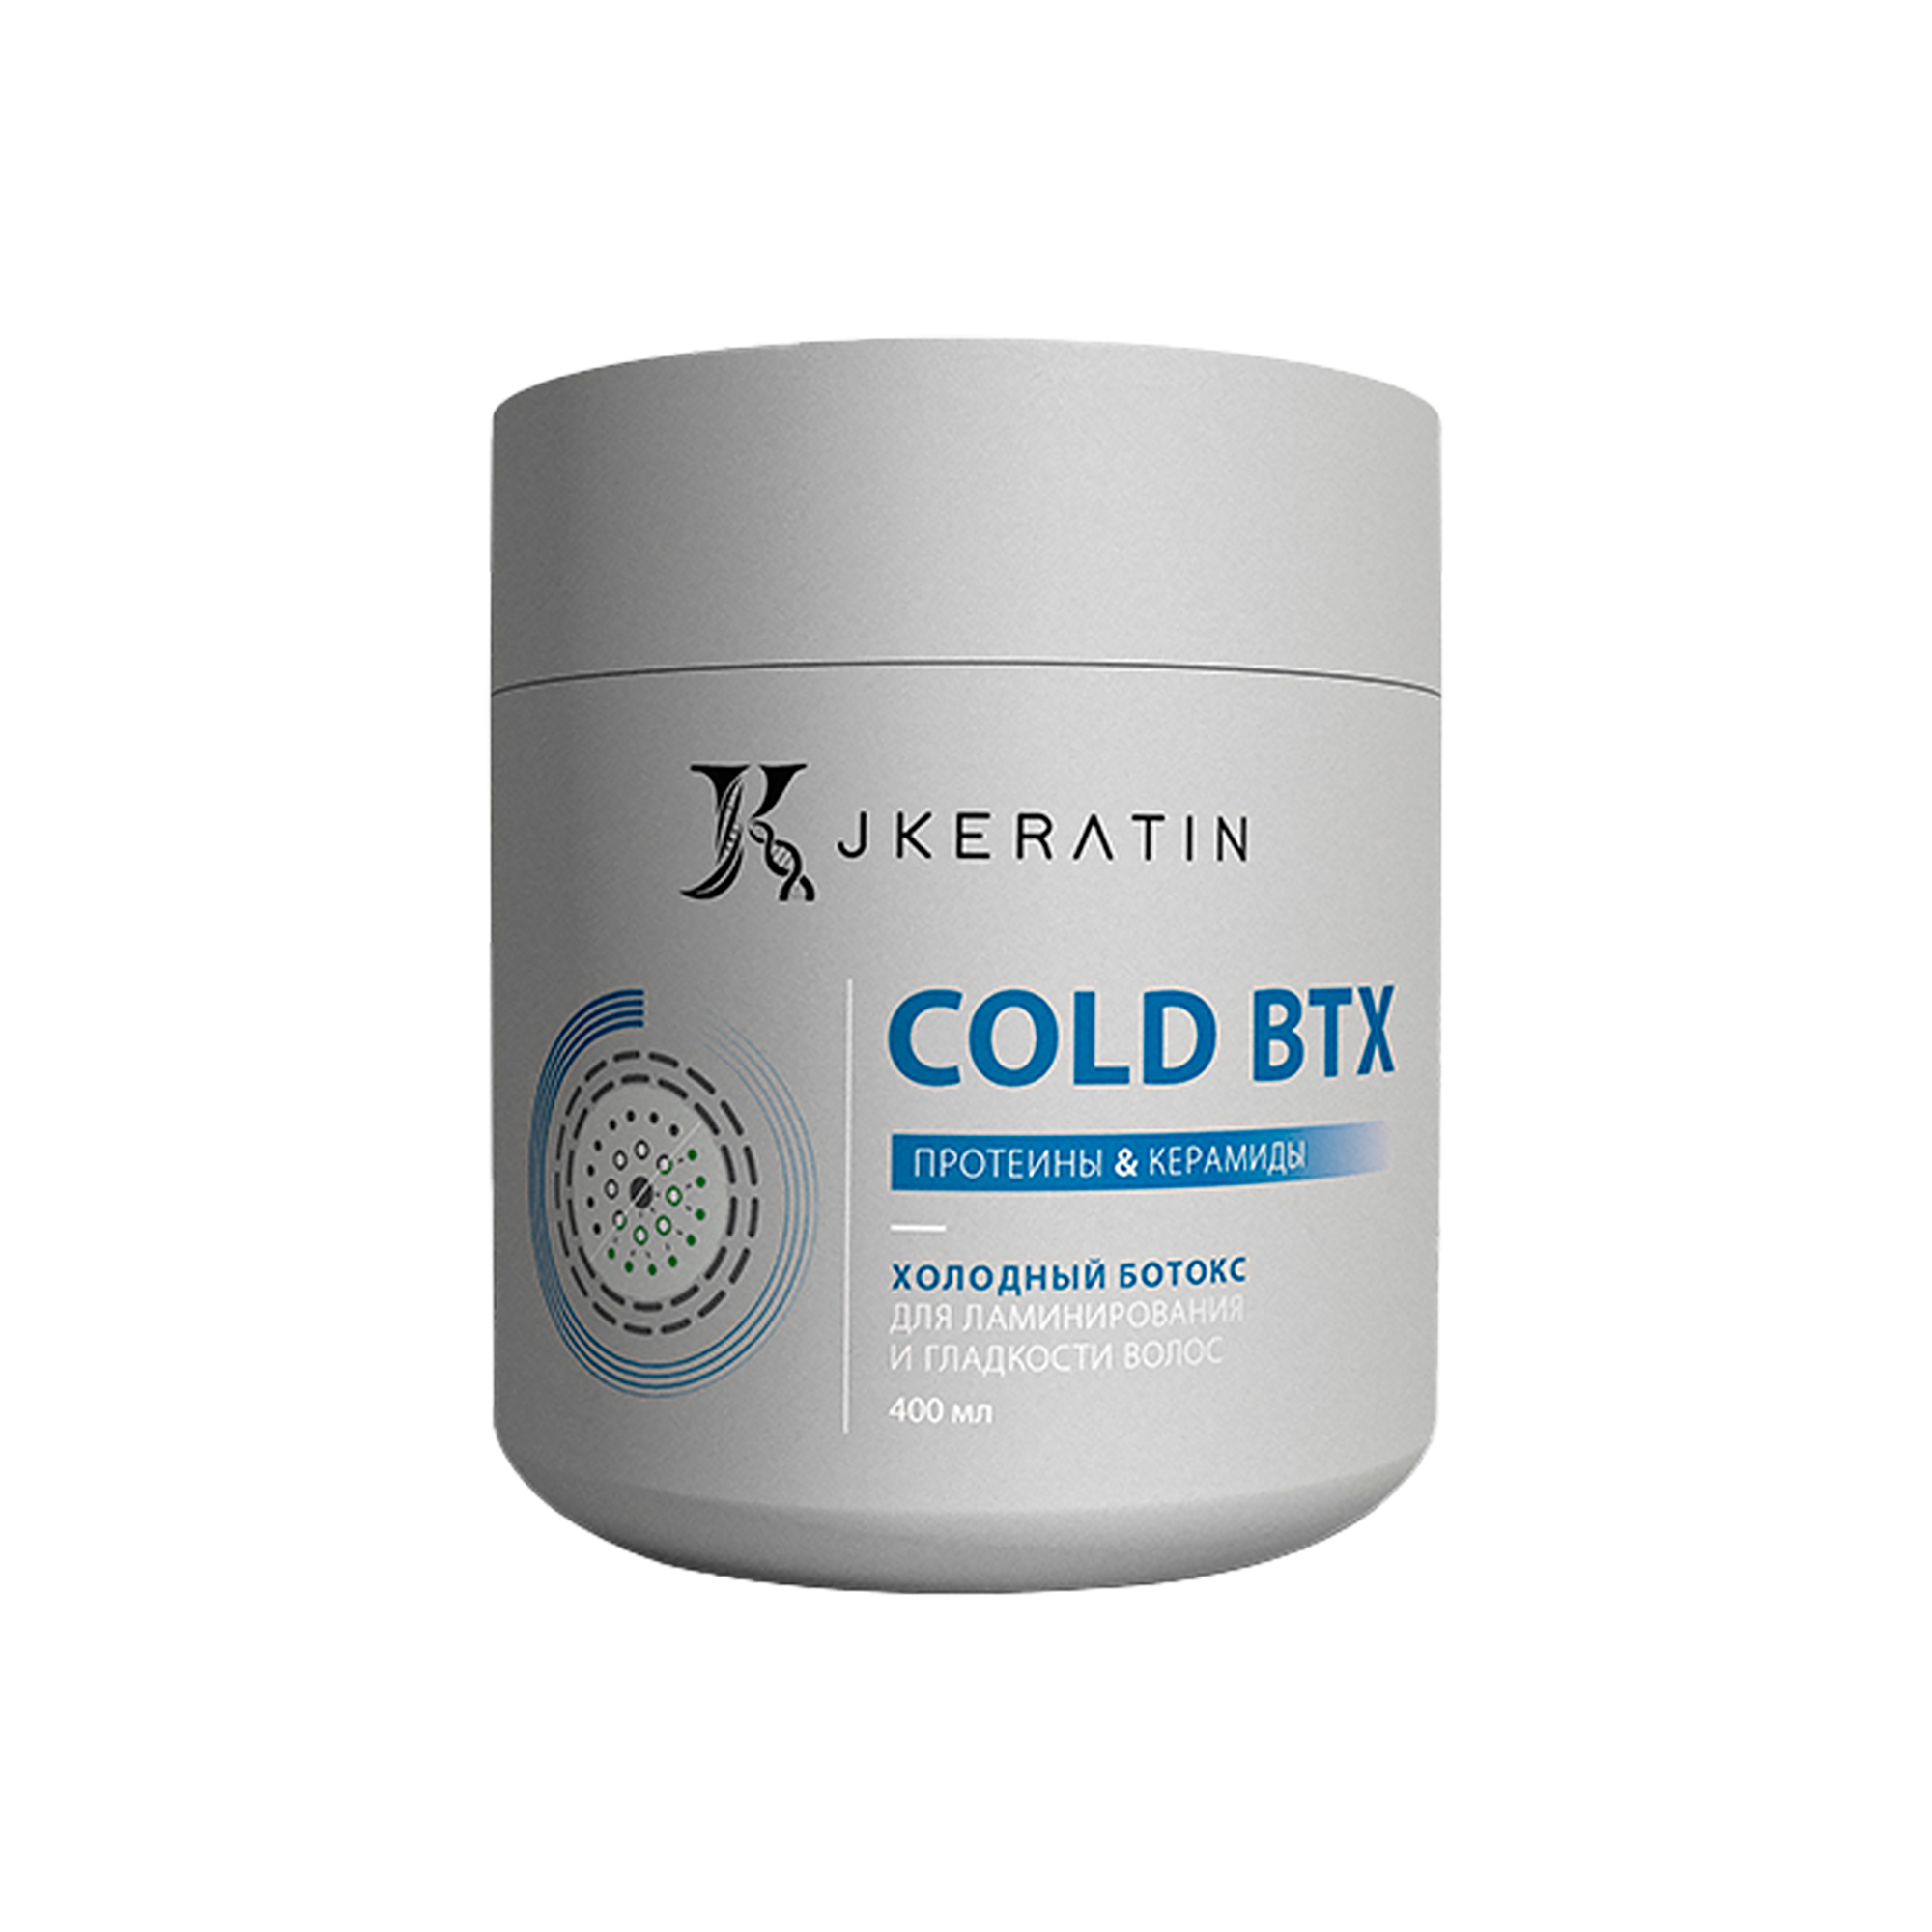 Холодный ботокс JKeratin Cold BTX для ламинирования и гладкости волос, 400 мл bouticle подарочный набор ботокс восстанавливающий